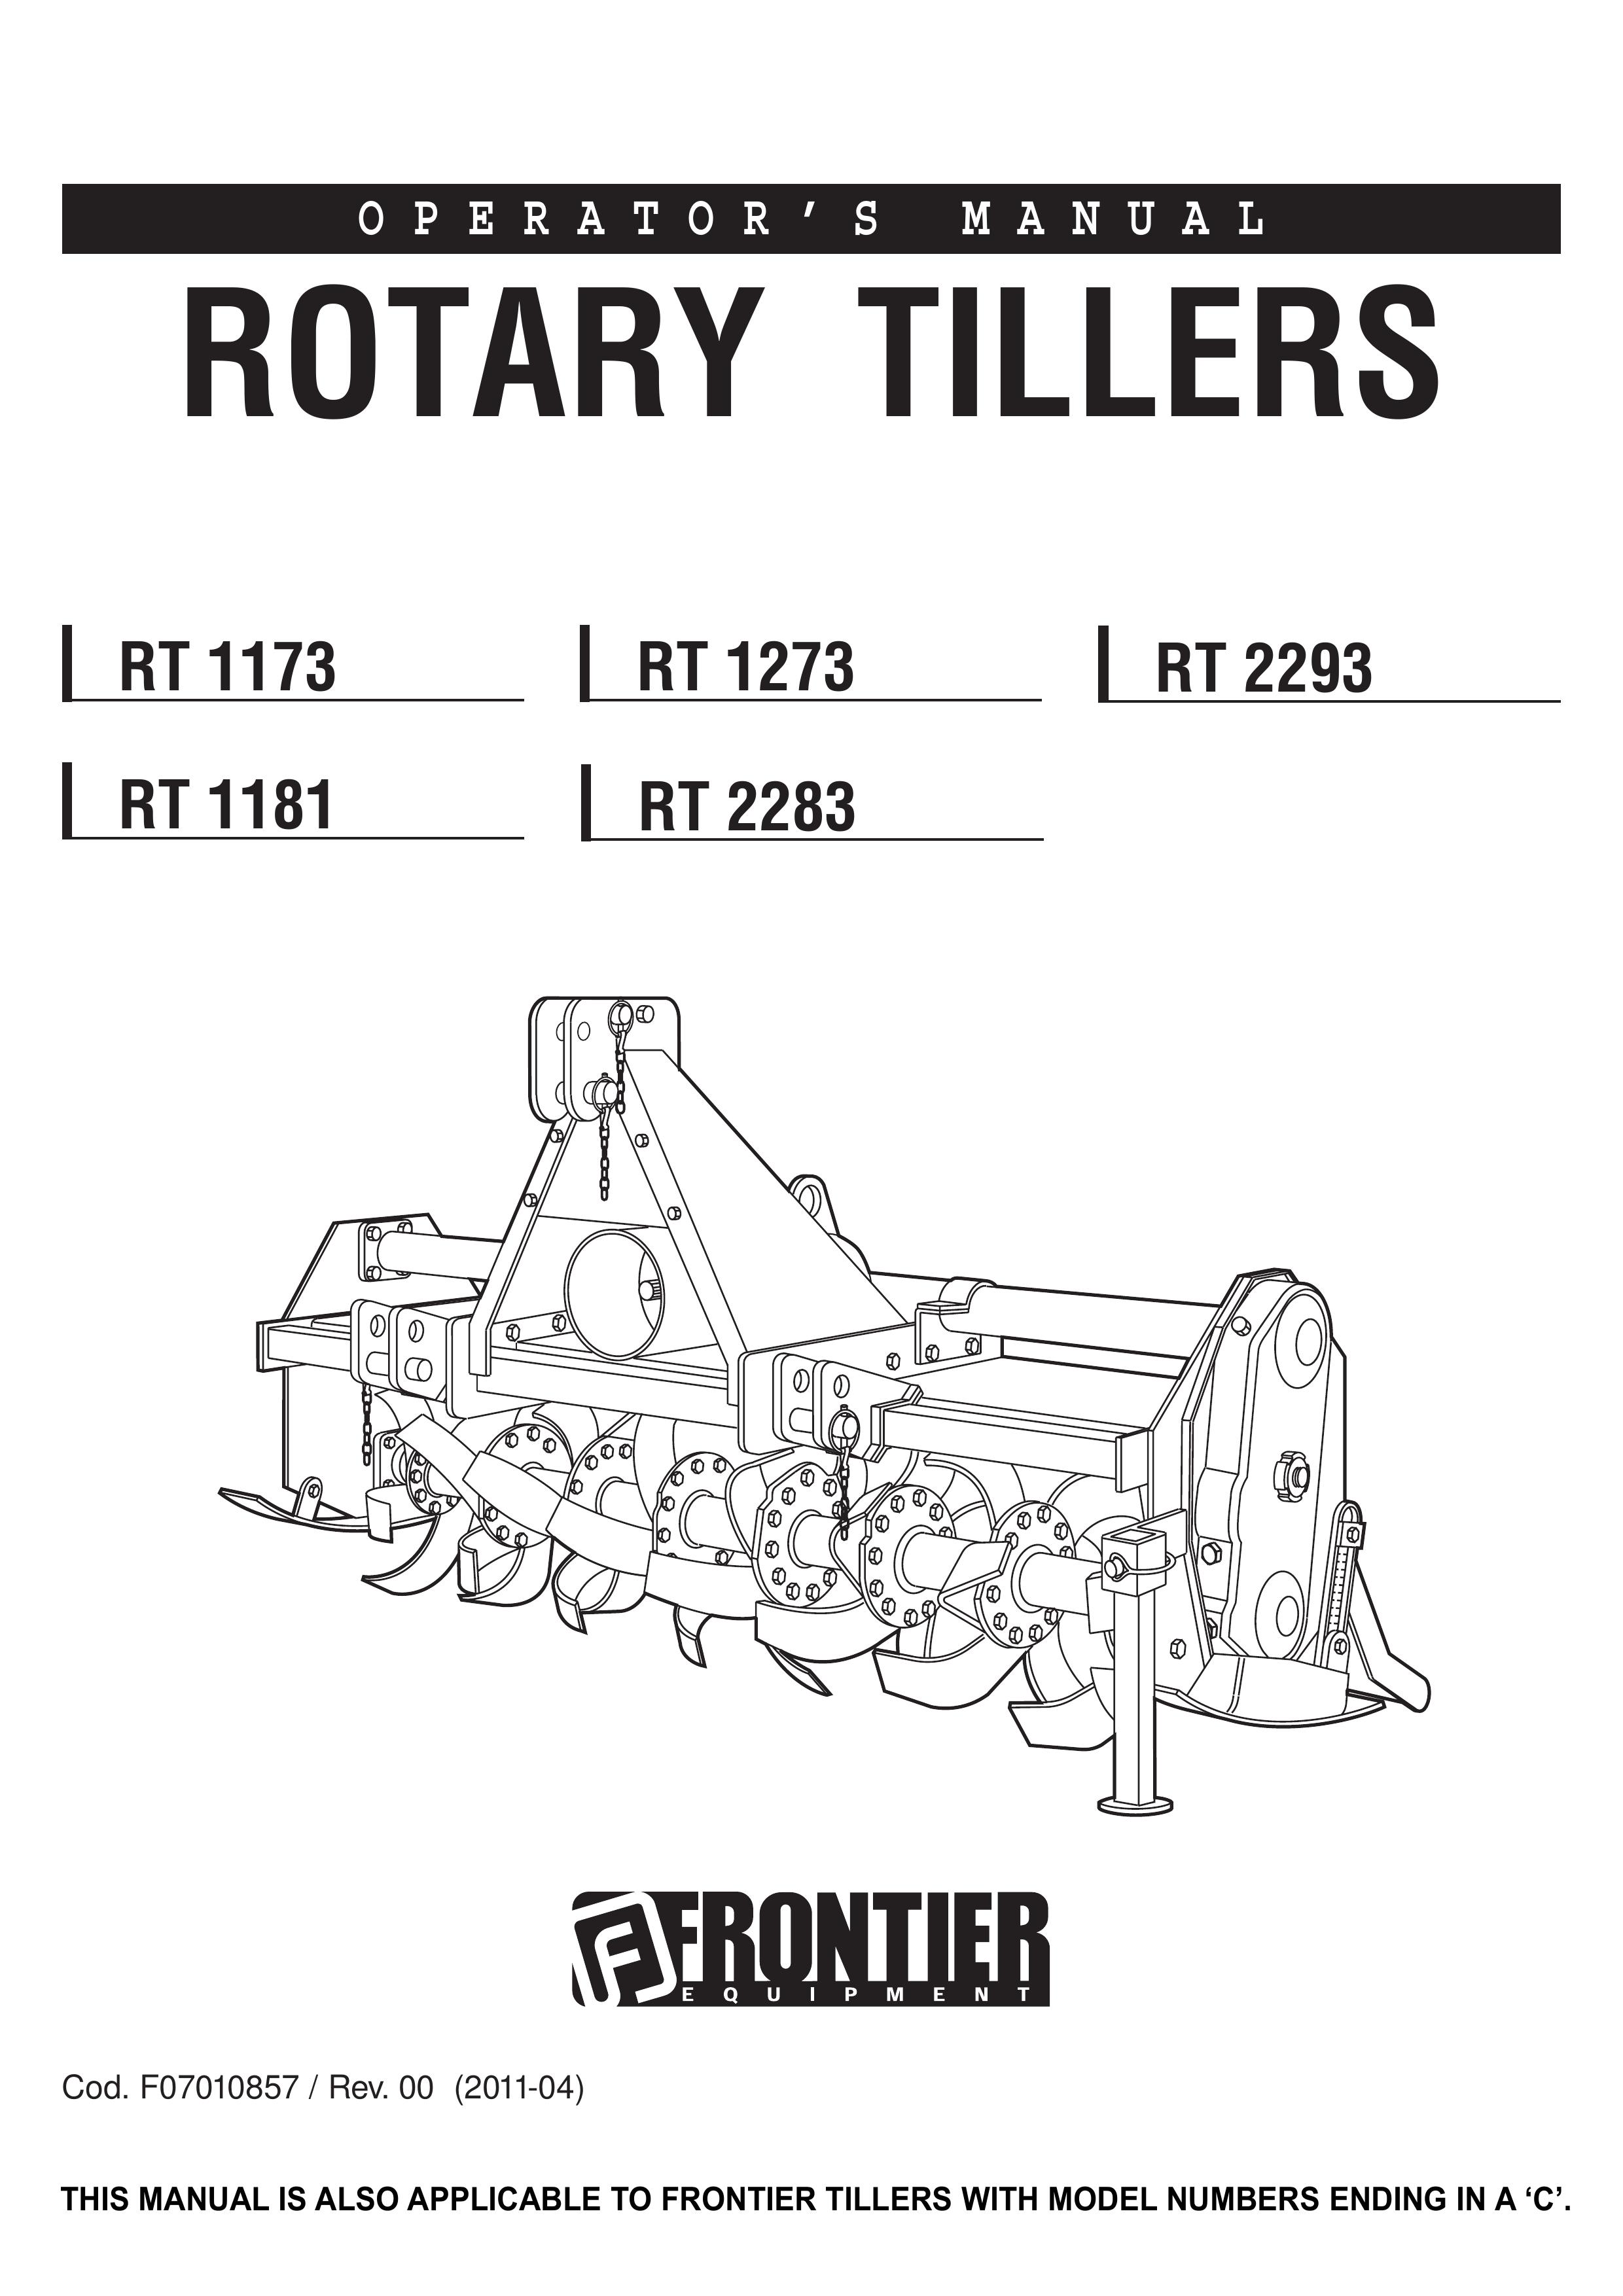 John Deere RT 1181 Tiller User Manual